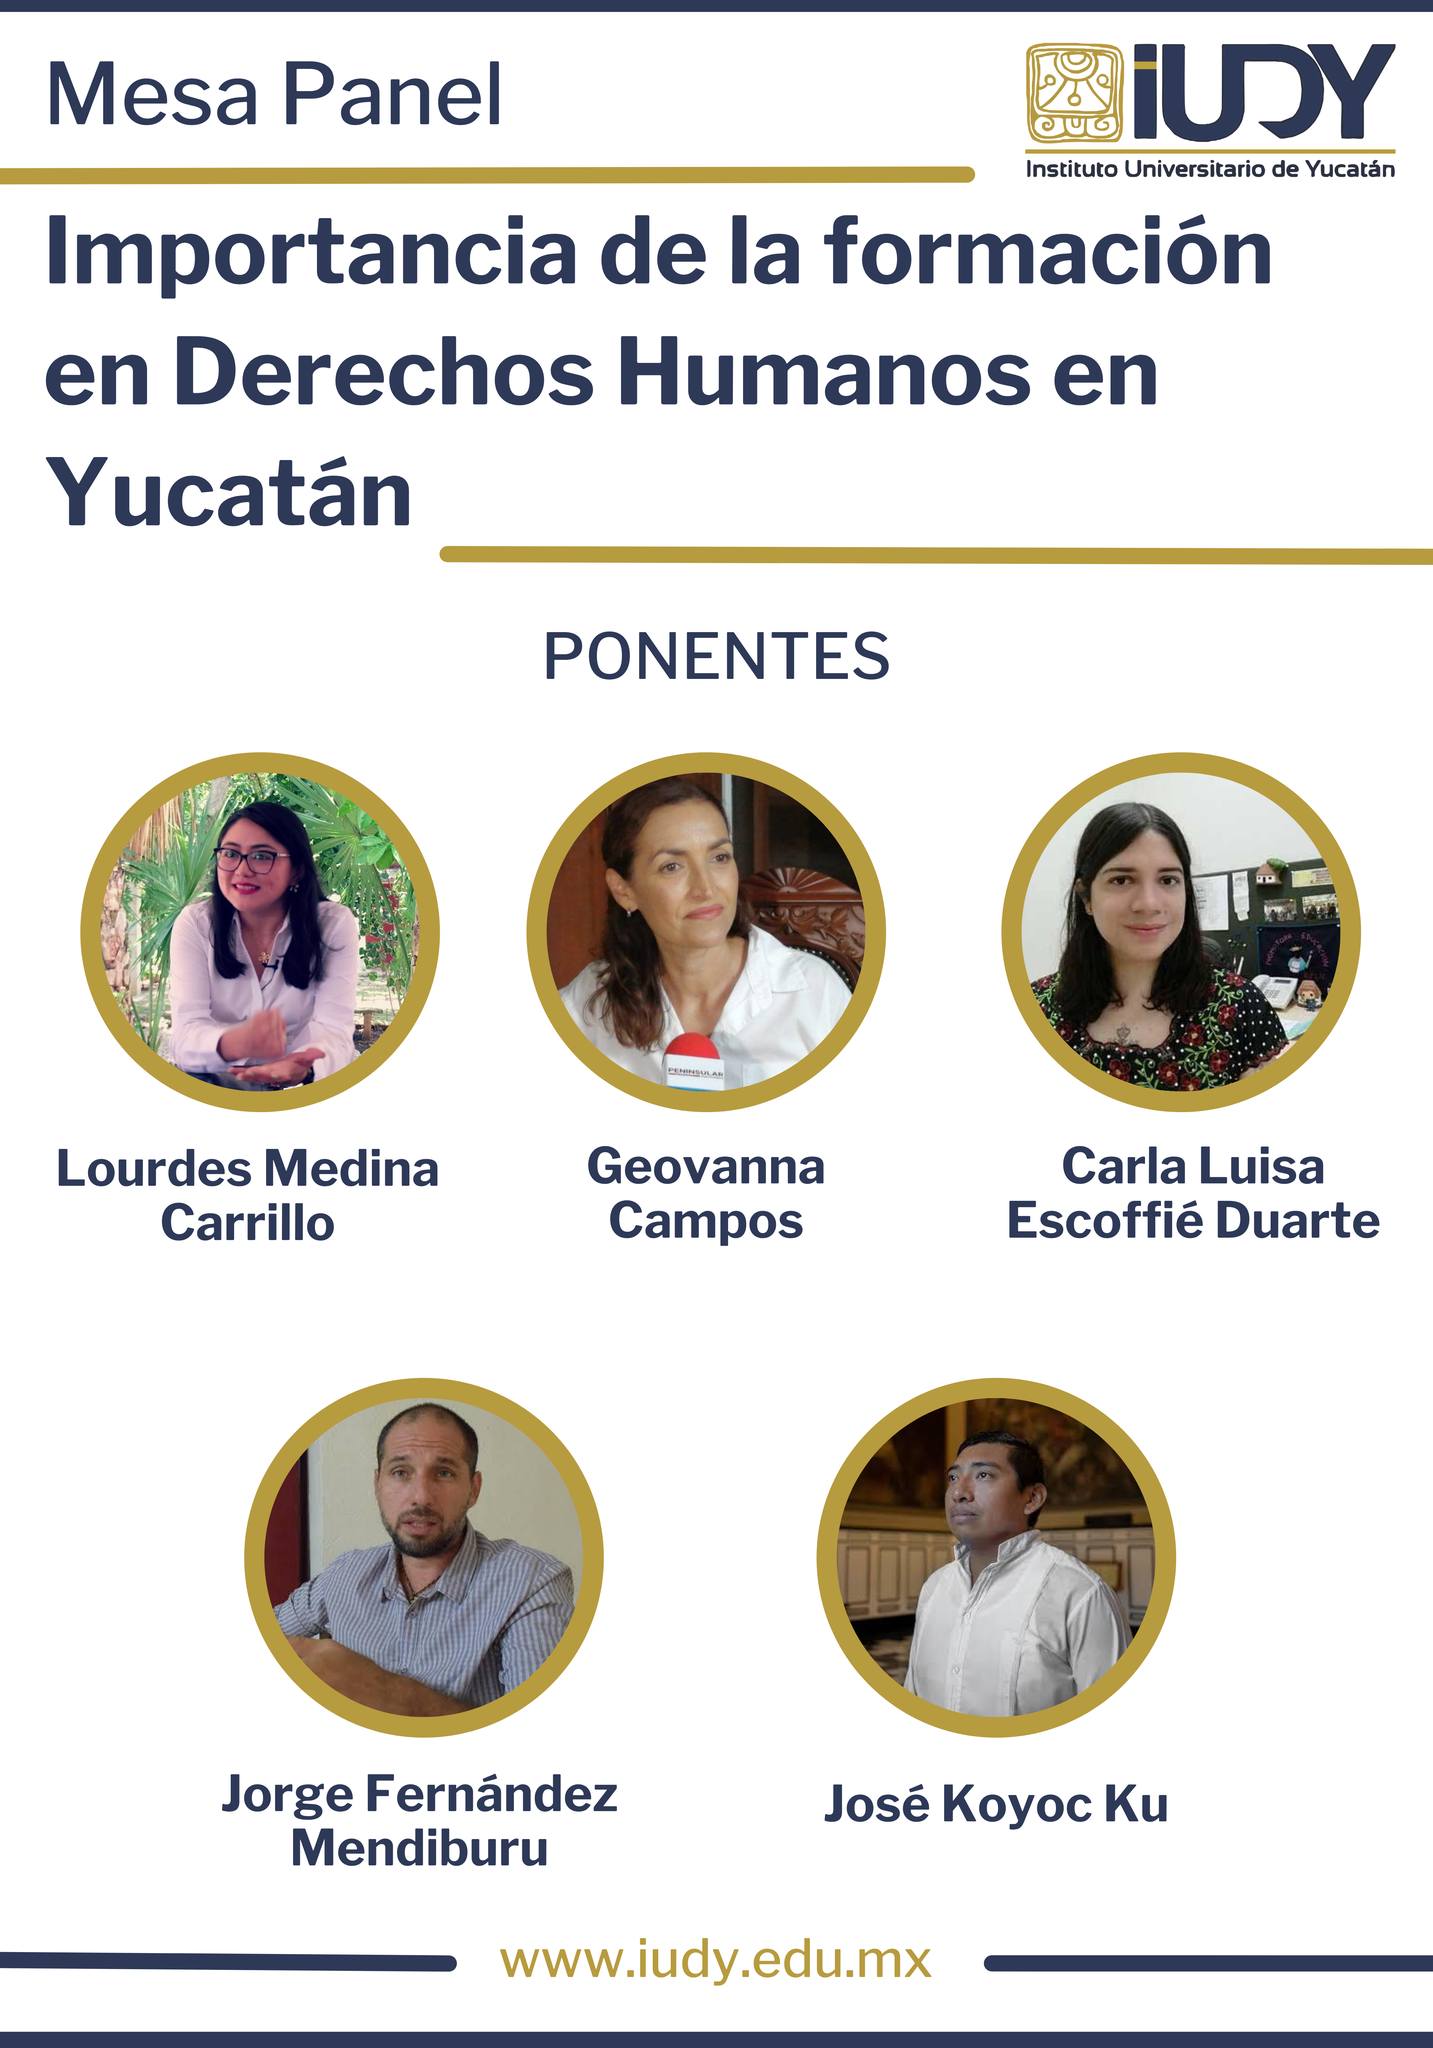 Panel “Importancia de la formación en Derechos Humanos en Yucatán”